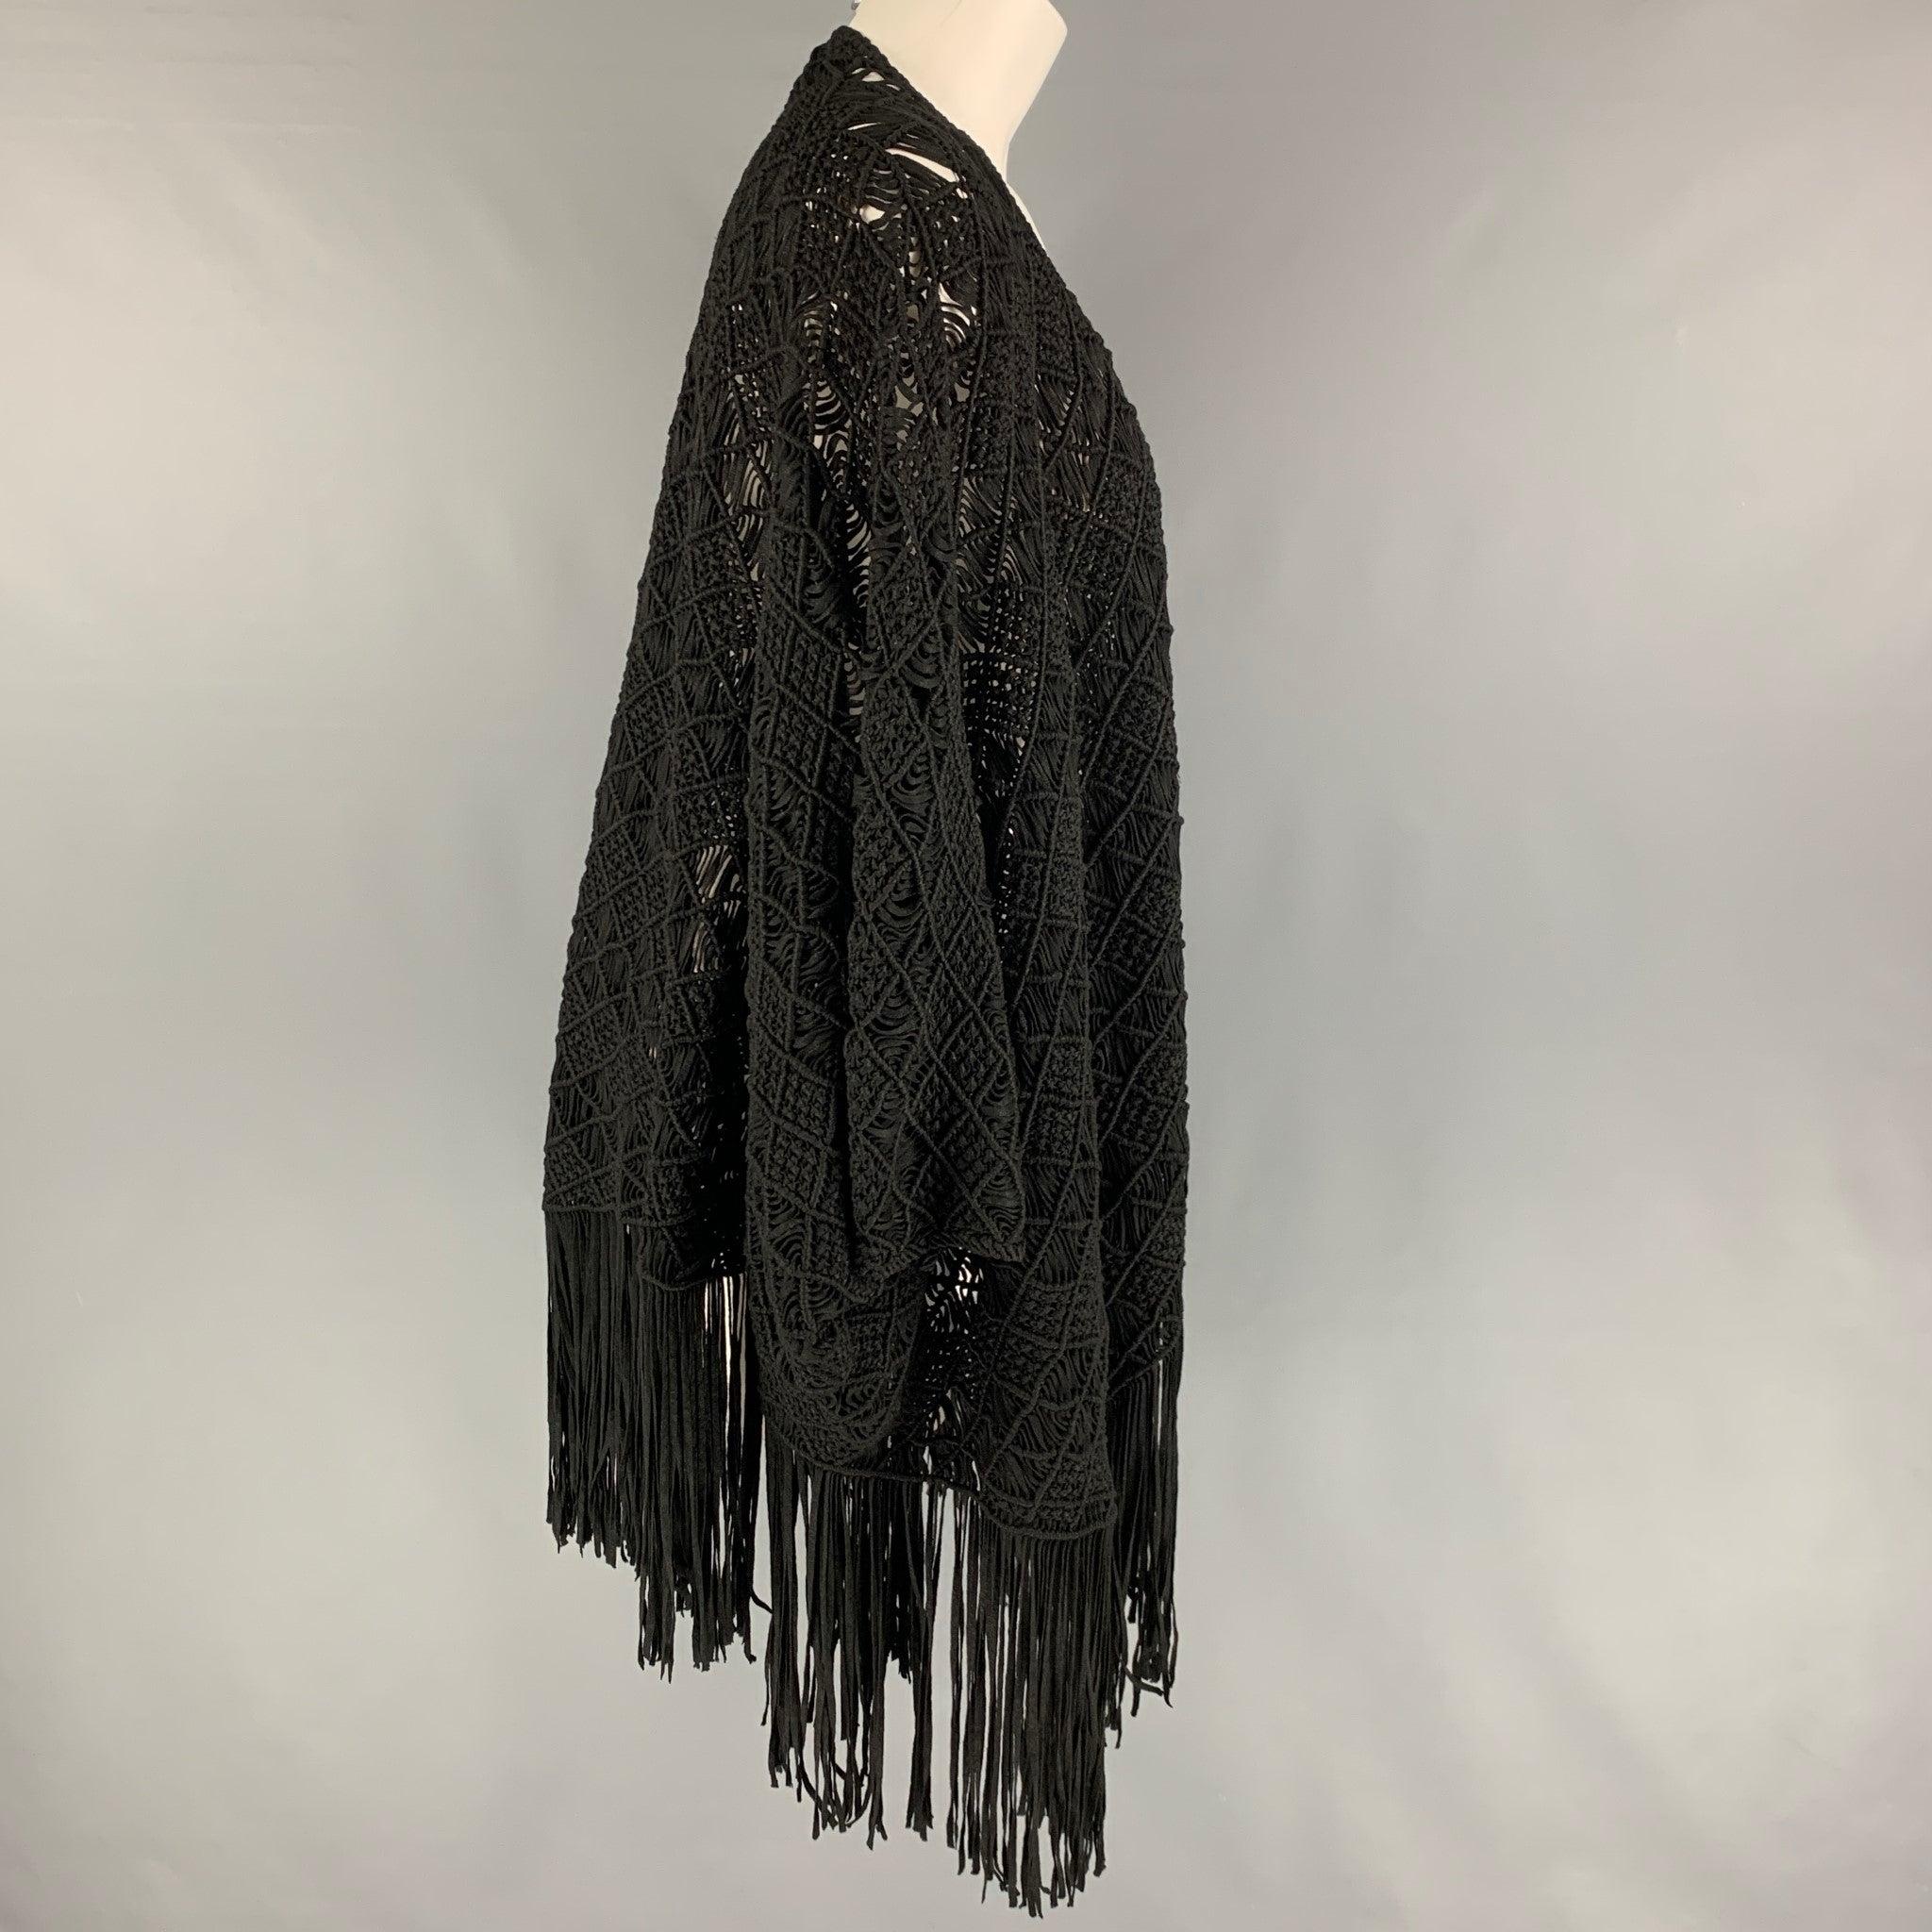 La cape 'Black Label' de RALPH LAUREN est réalisée en viscose/polyester tricoté noir et présente une bordure à franges et un devant ouvert.
Très bien
Etat d'occasion. 

Marqué :   M/ONE 

Mesures : 
 
Épaule : 57 pouces Longueur : 37 pouces 
  
  
